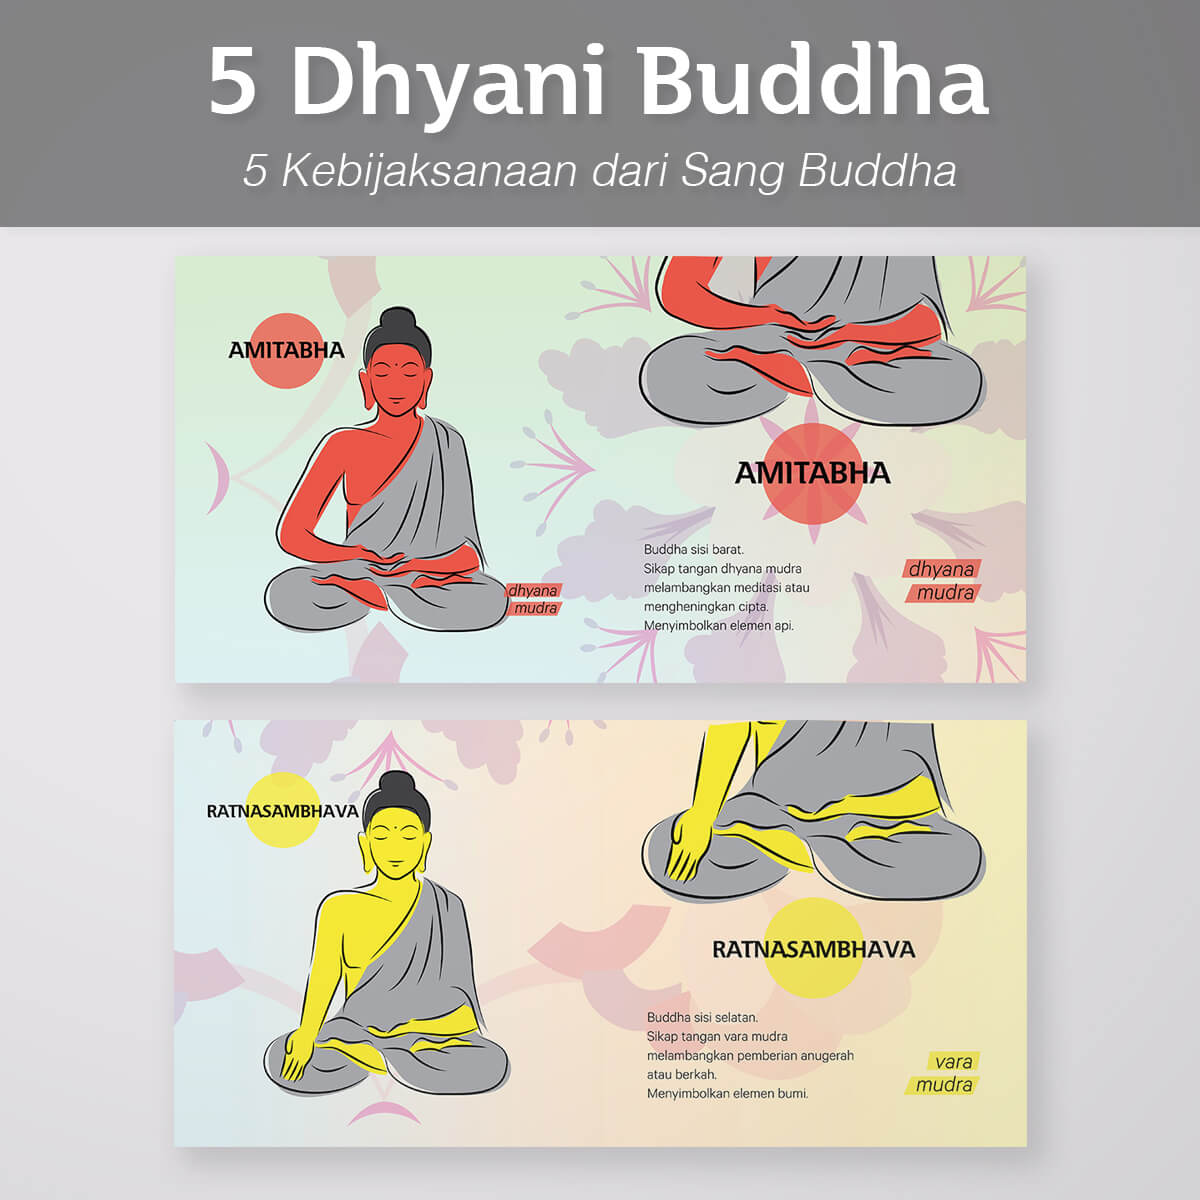 Desain Prita - 5 Dhyani Buddha - Amitabha dan Ratnasambhava